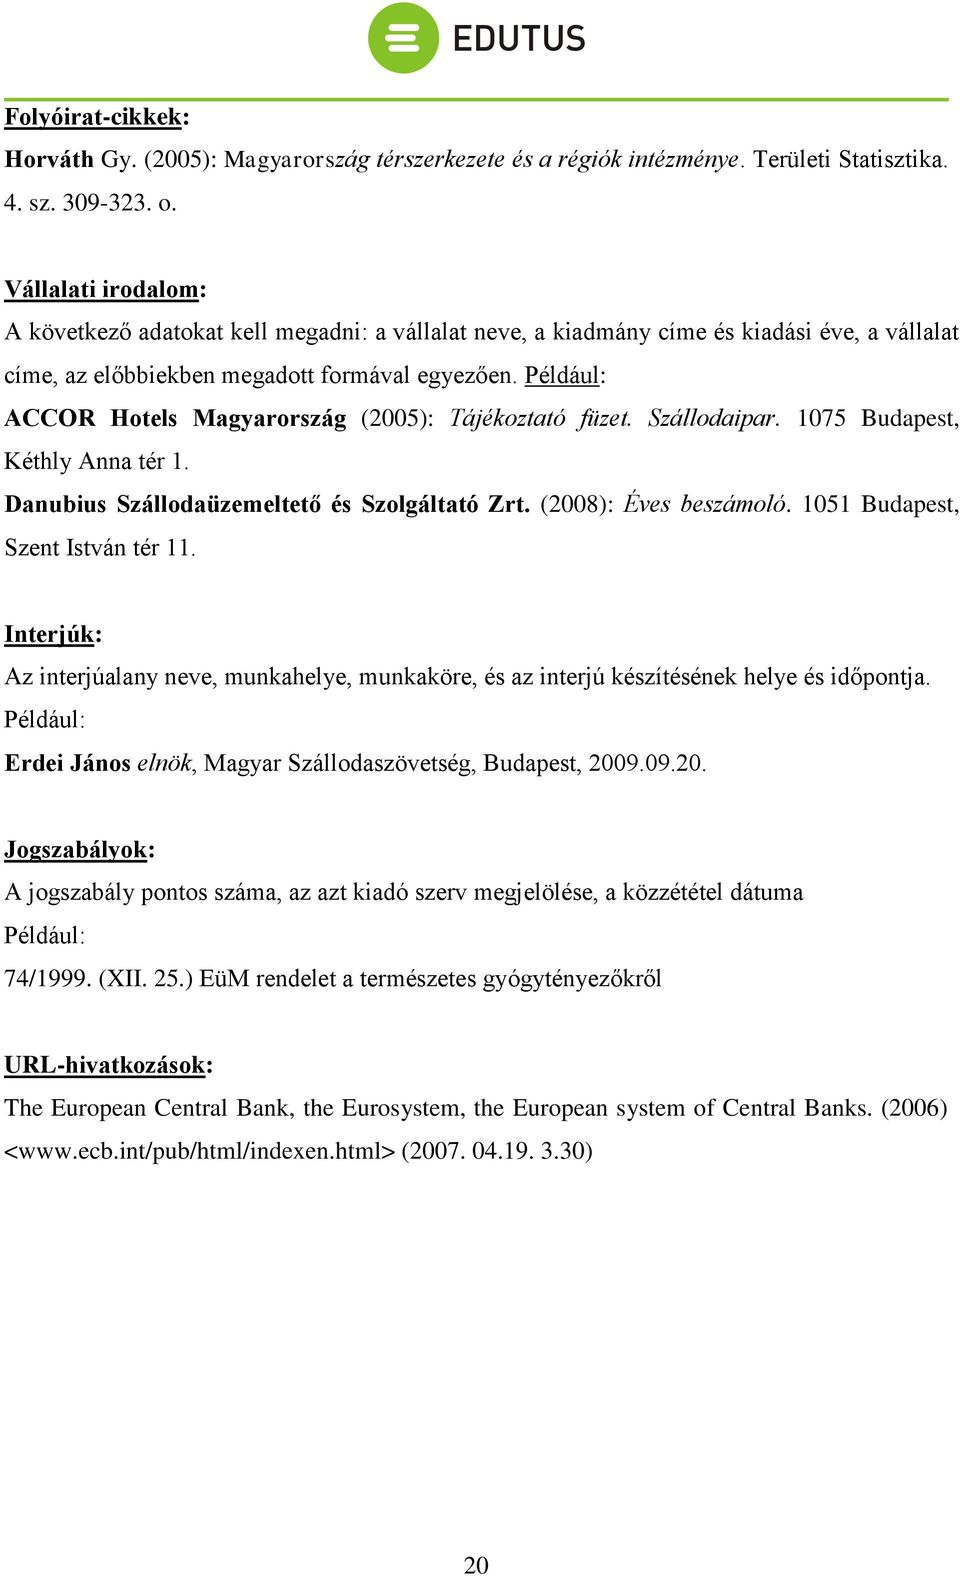 Például: ACCOR Hotels Magyarország (2005): Tájékoztató füzet. Szállodaipar. 1075 Budapest, Kéthly Anna tér 1. Danubius Szállodaüzemeltető és Szolgáltató Zrt. (2008): Éves beszámoló.